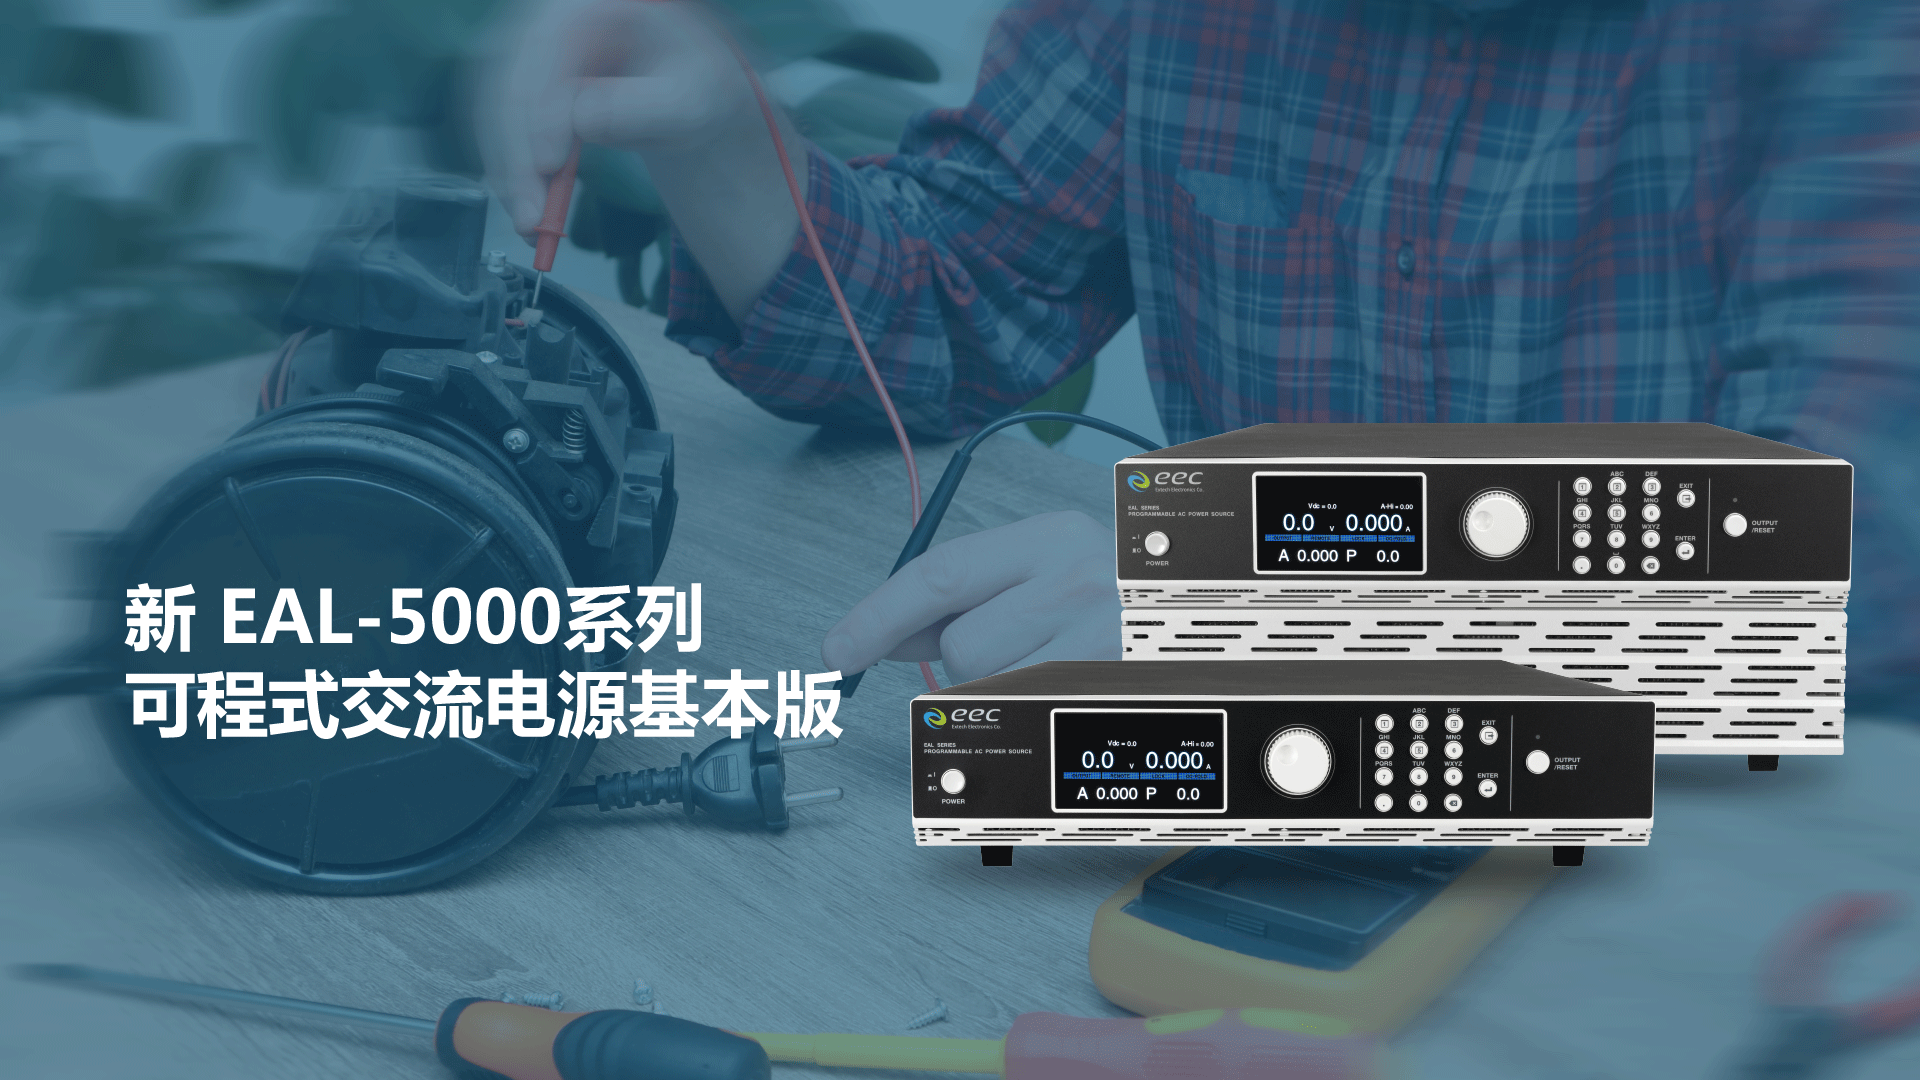 华仪电子隆重推出新EAL-5000系列可编程交流电源基本版